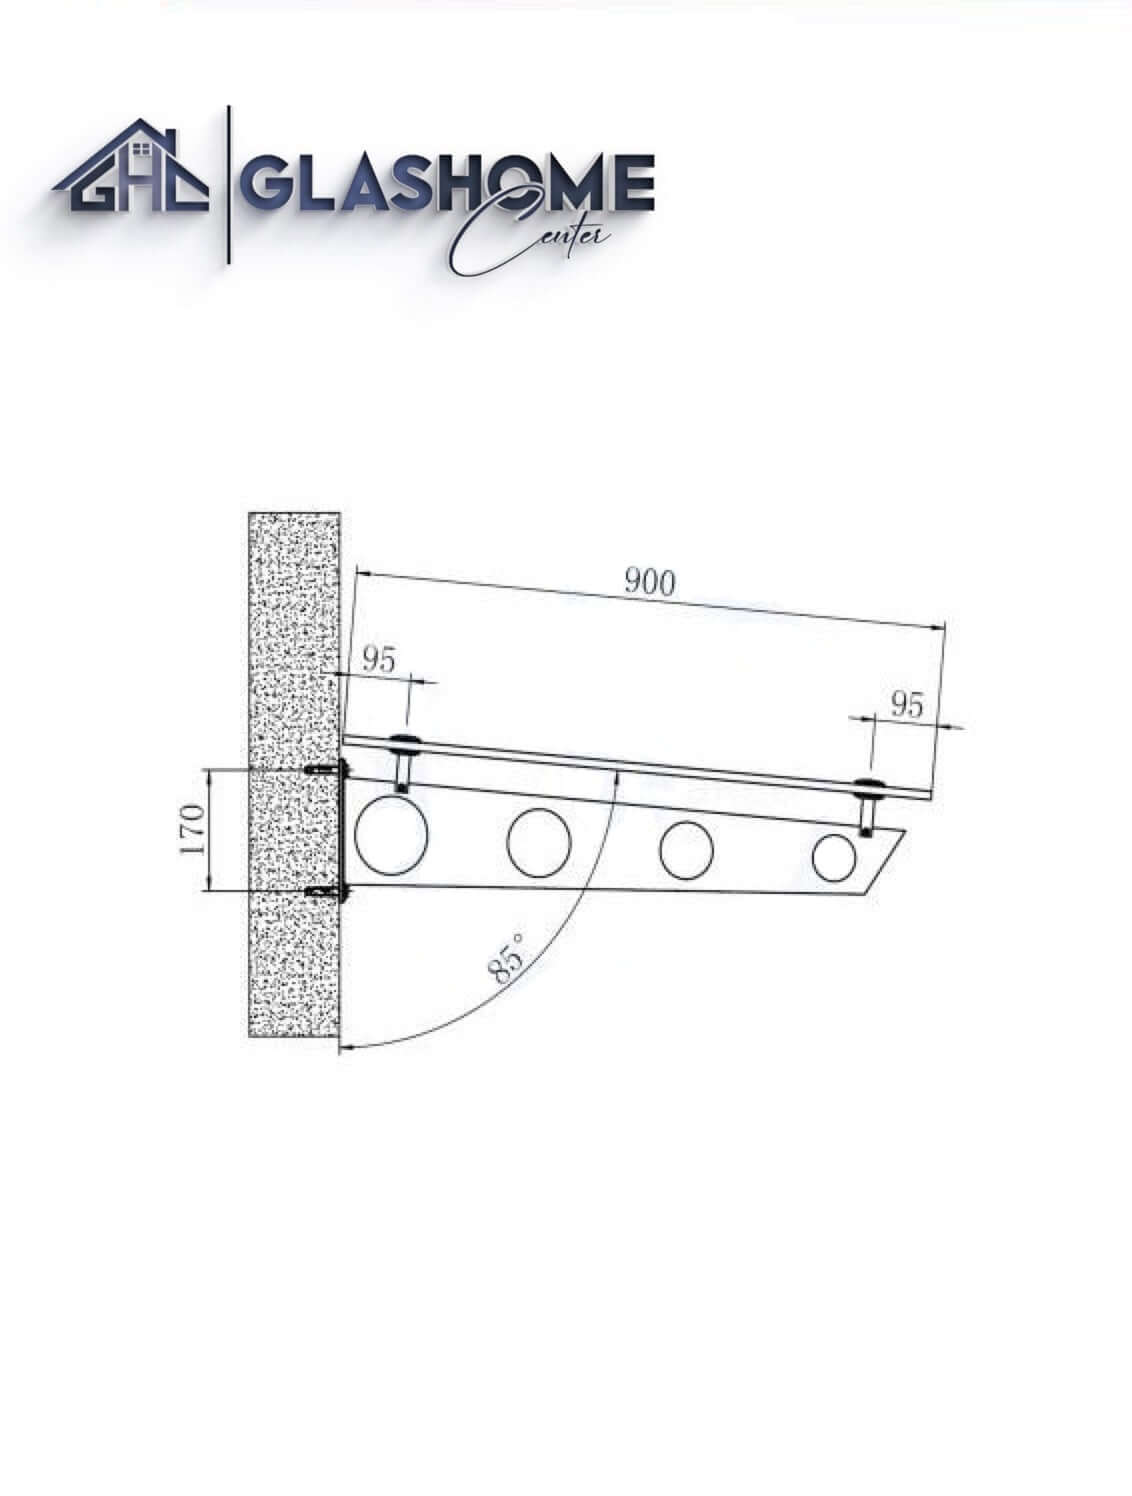 GlasHomeCenter - baldacchino in vetro - vetro trasparente - 250x90 cm - vetro di sicurezza stratificato 13,1 mm - incl.3 staffe in acciaio inossidabile nero variante "Stoccolma"